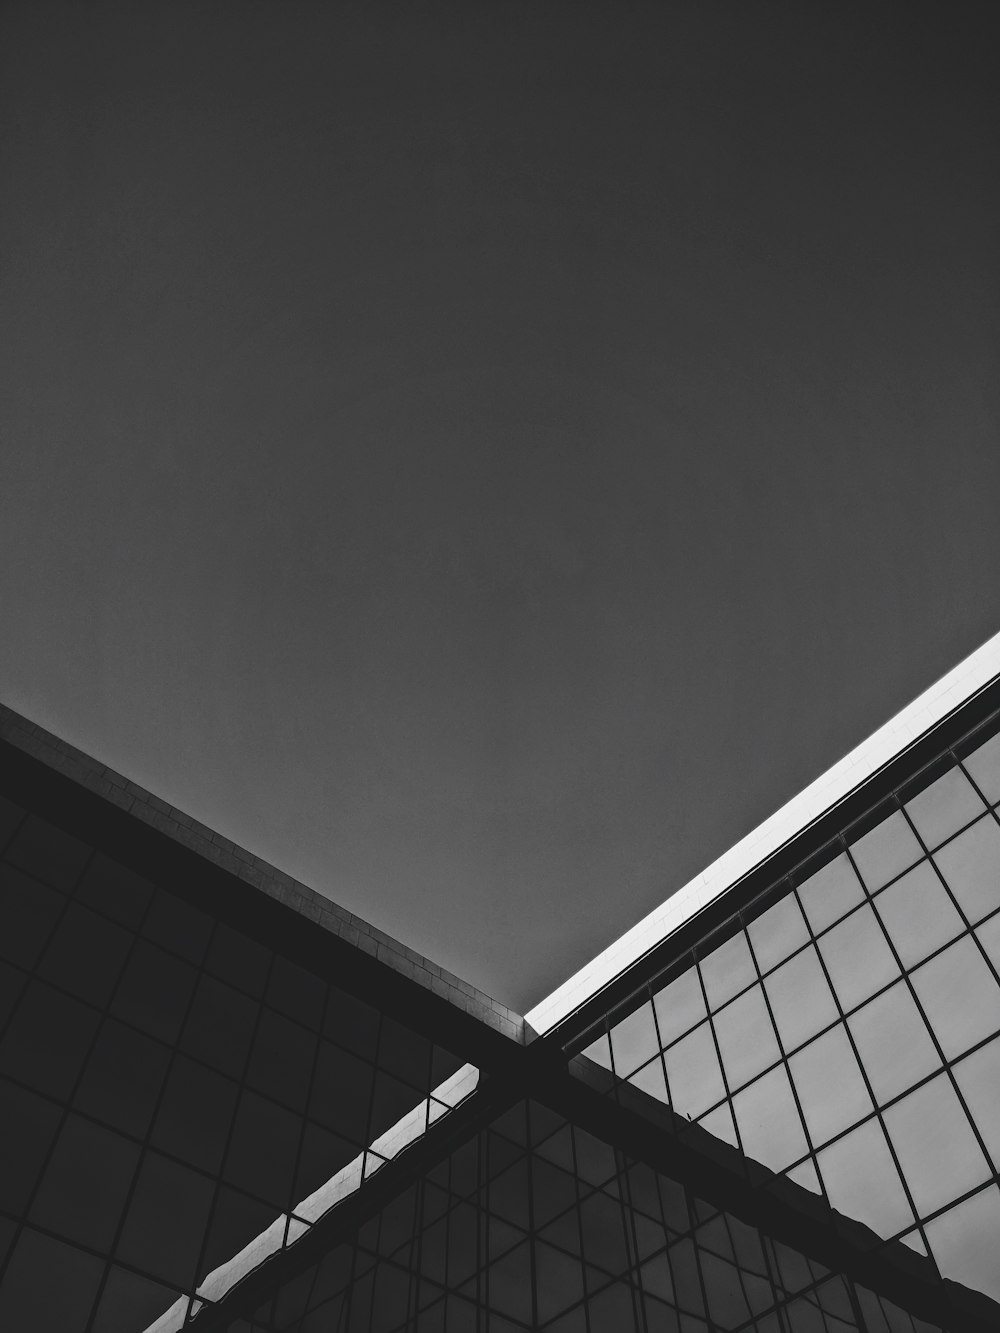 Une photo en noir et blanc du toit d’un bâtiment